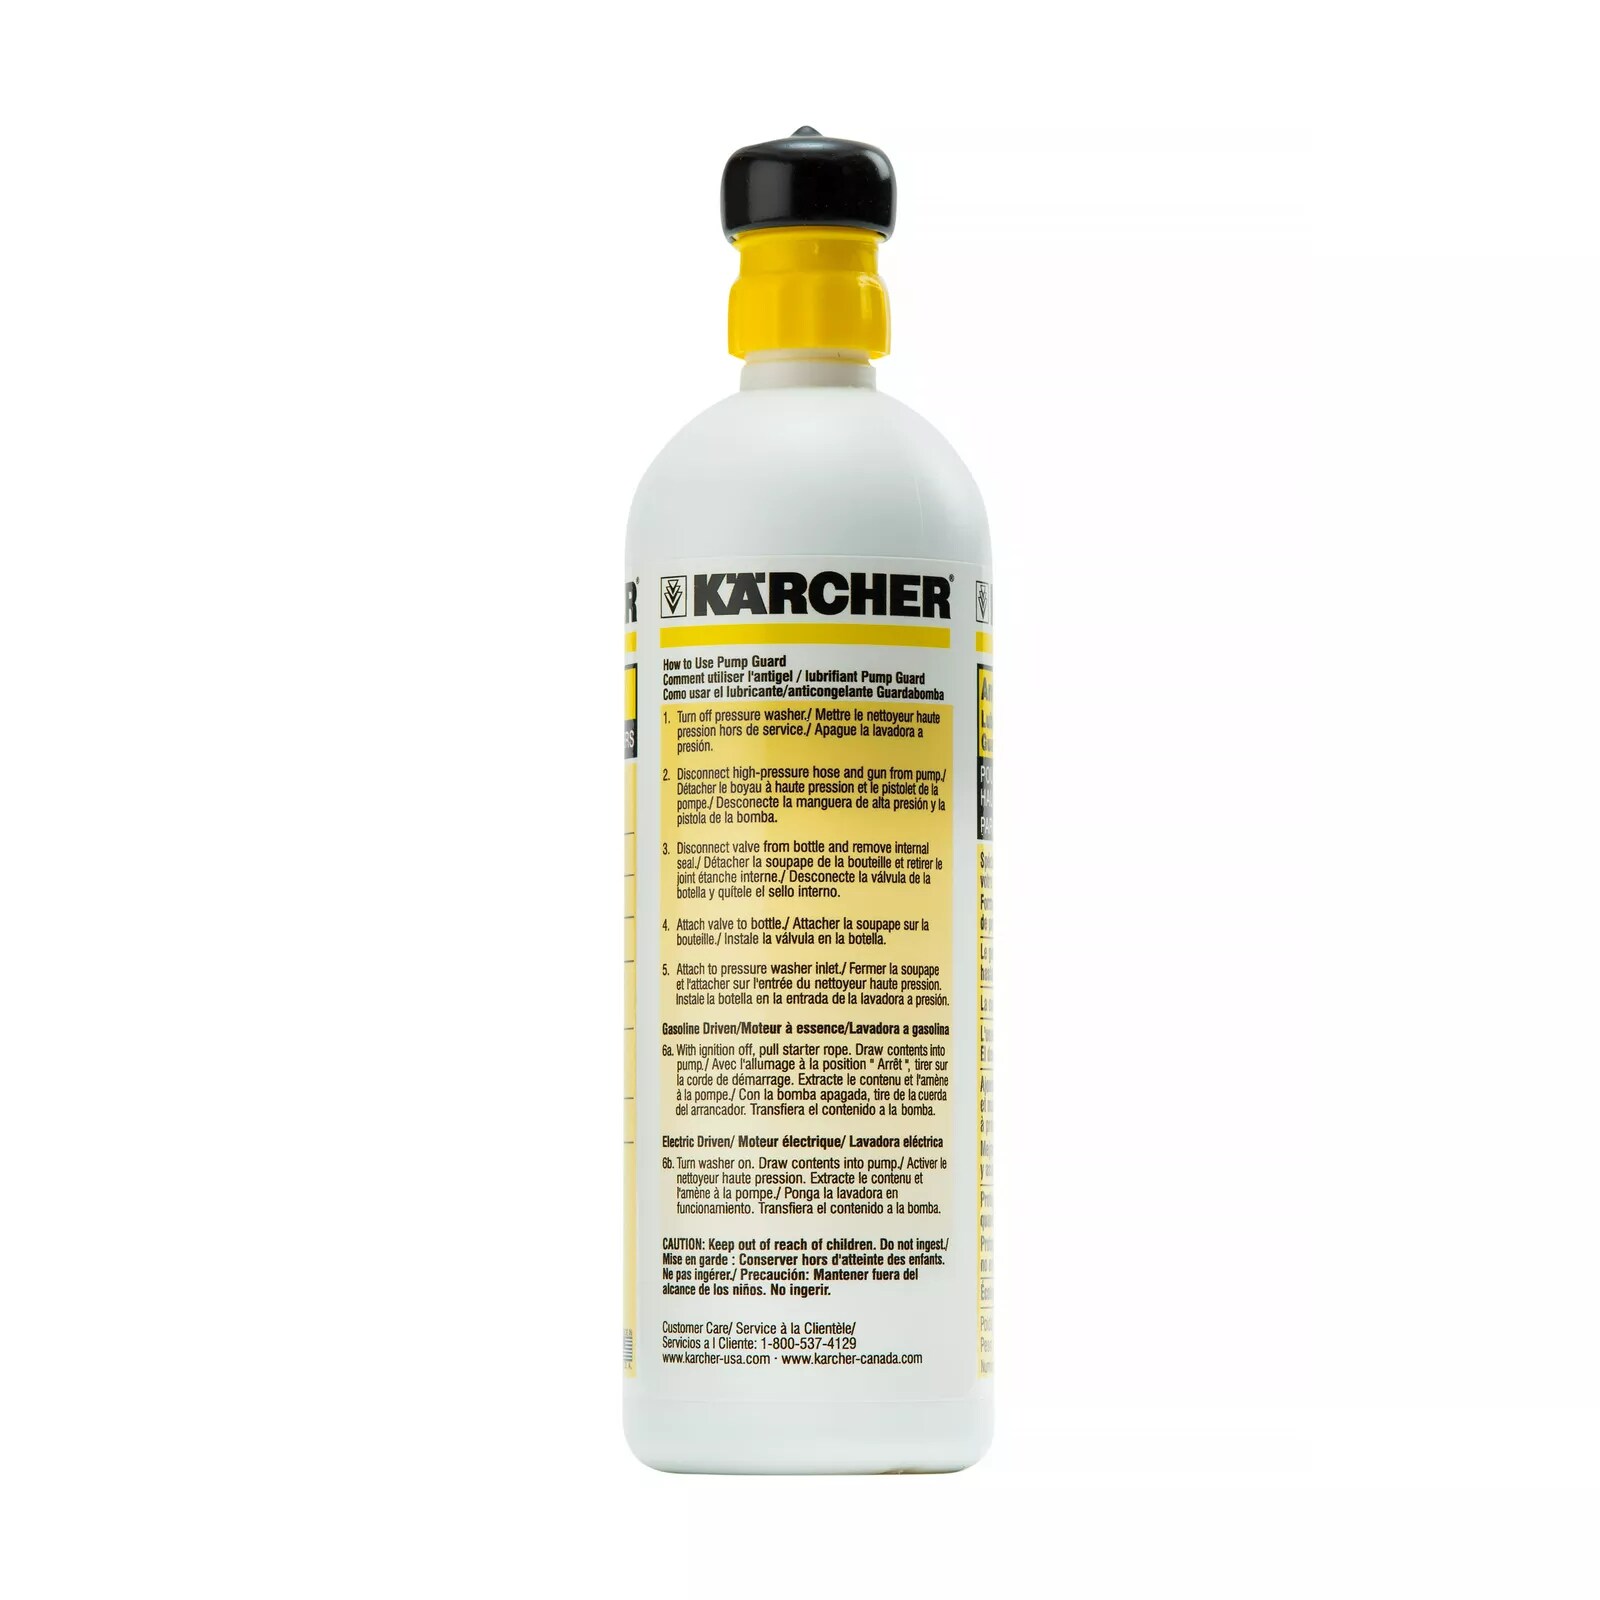 Karcher Pressure Washer Pump Saver - 16 oz. Bottle - Protects